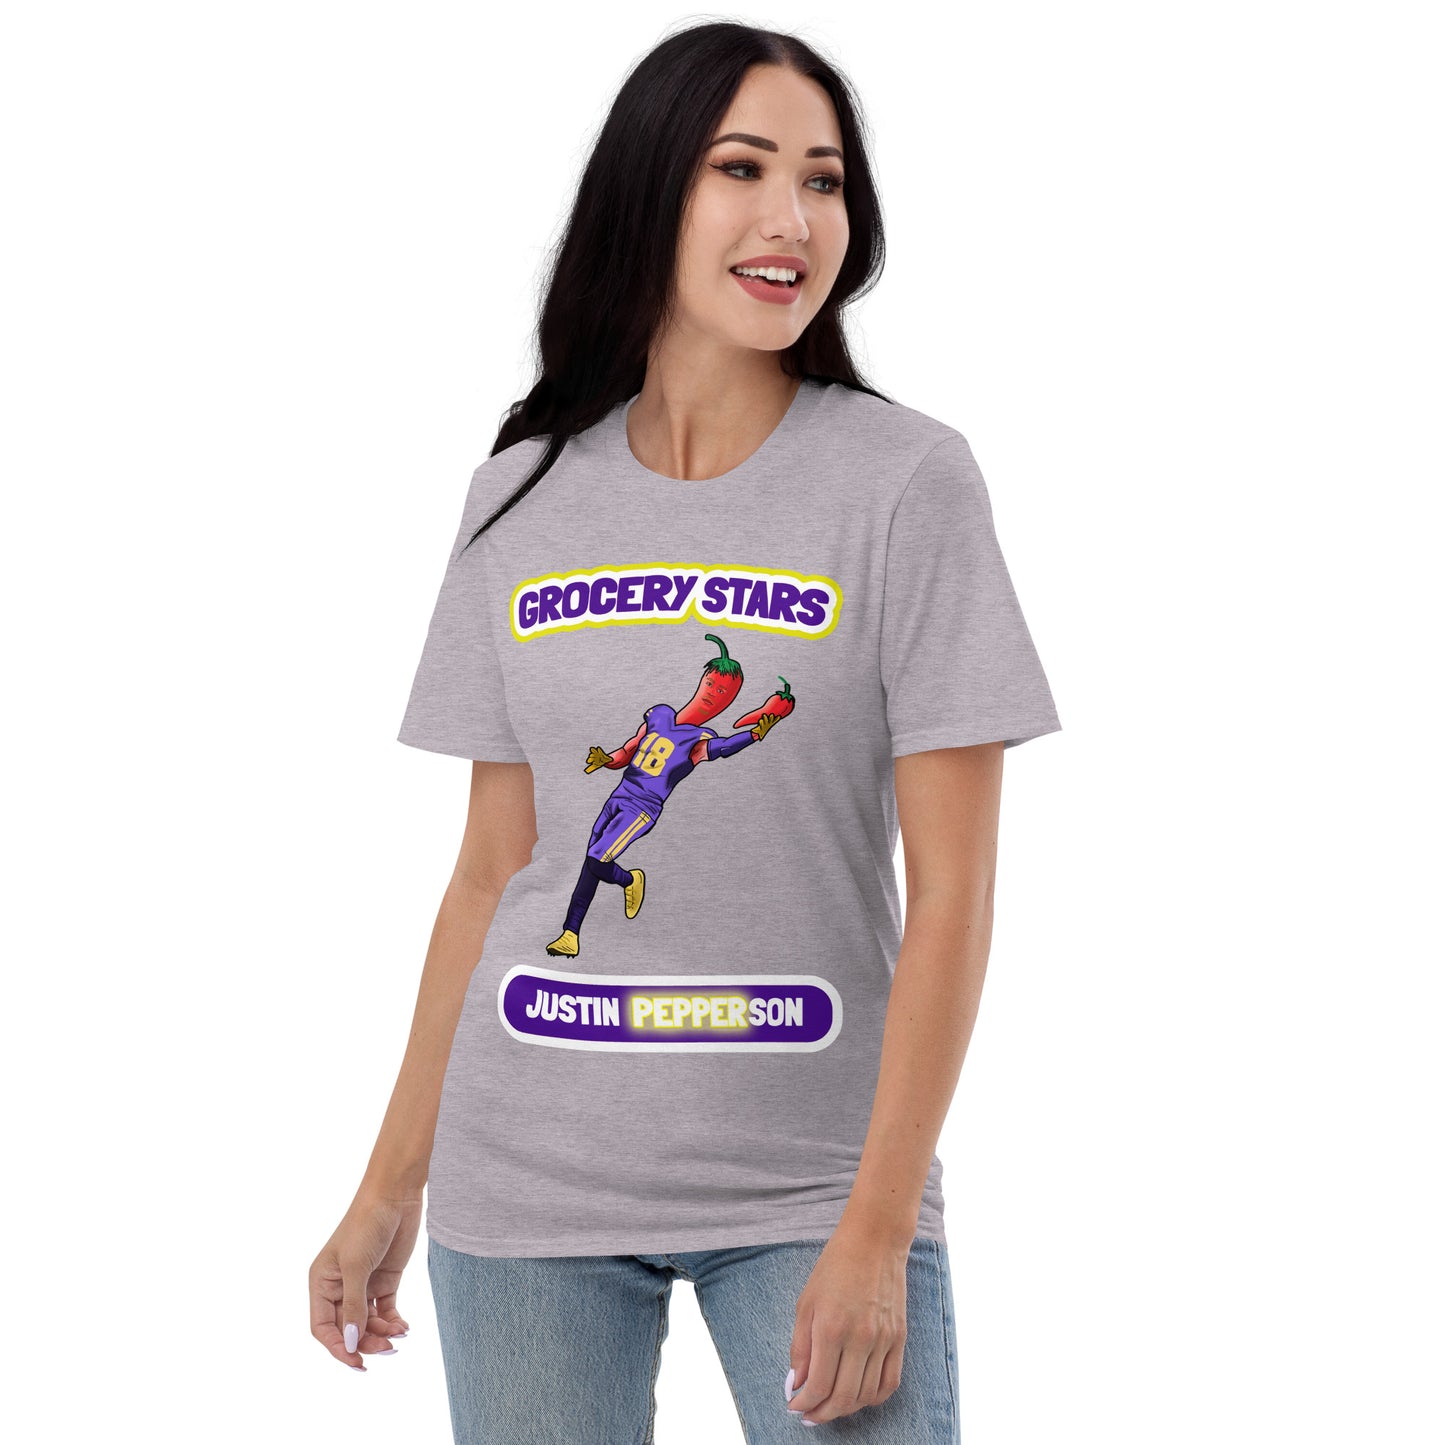 Justin Pepperson - Women's Short-Sleeve T-Shirt